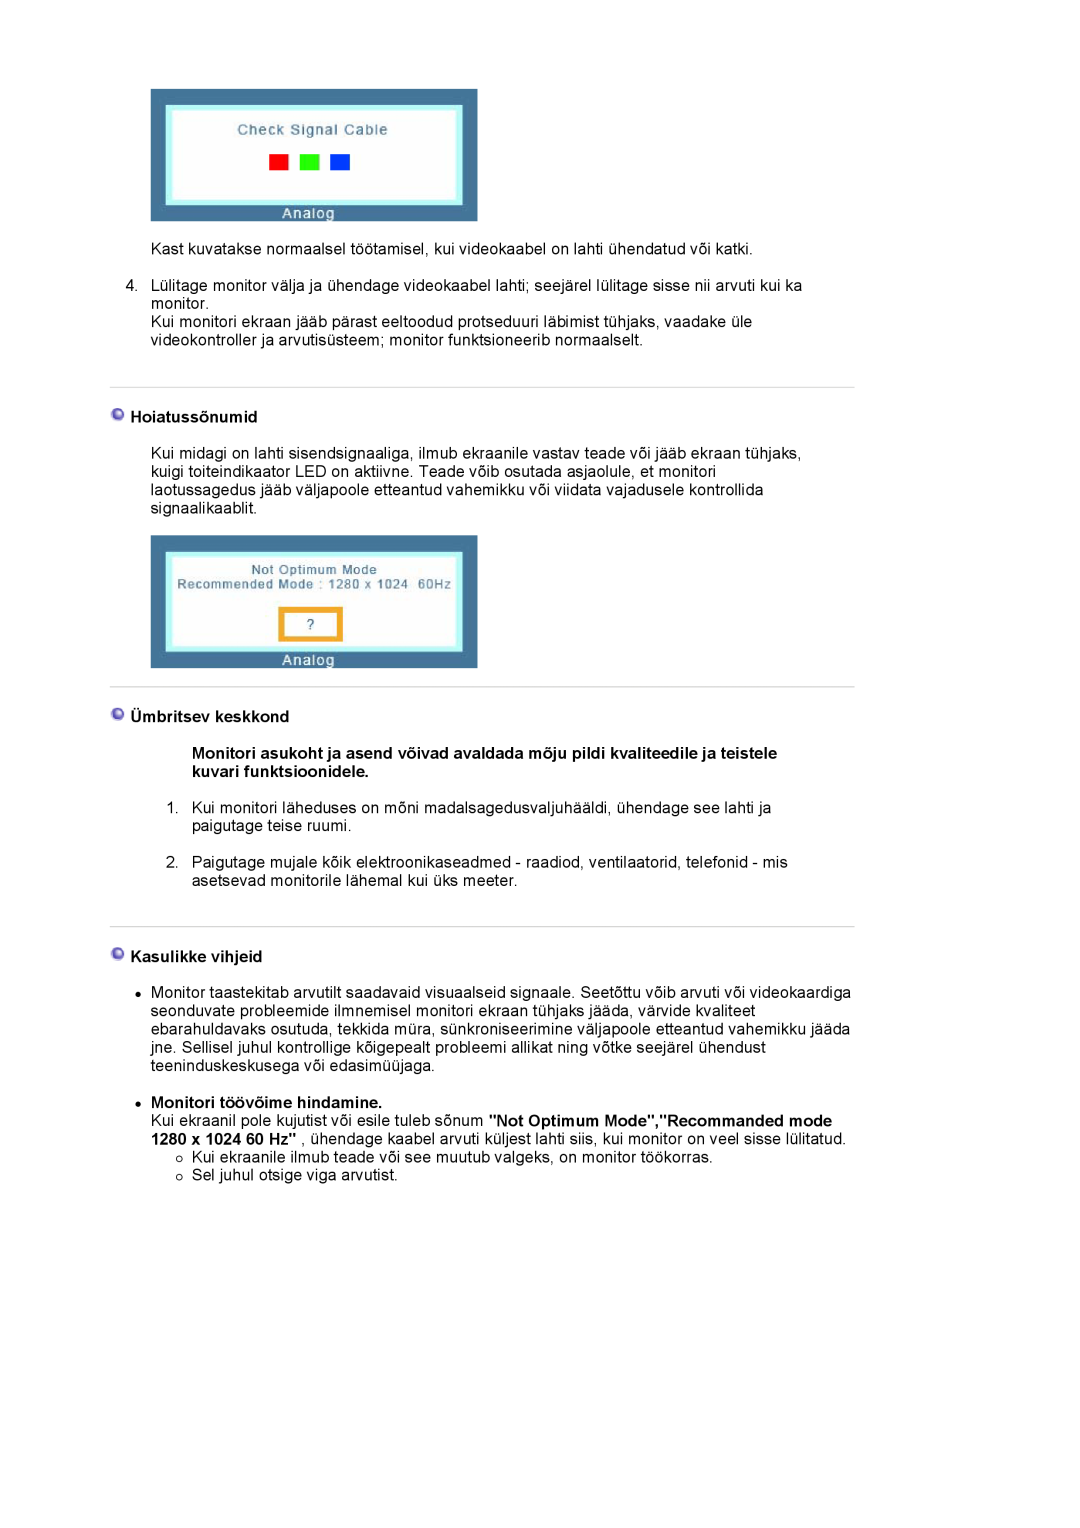 Samsung LS17MJVKS/EDC manual Hoiatussõnumid, Ümbritsev keskkond, Kasulikke vihjeid, z Monitori töövõime hindamine 